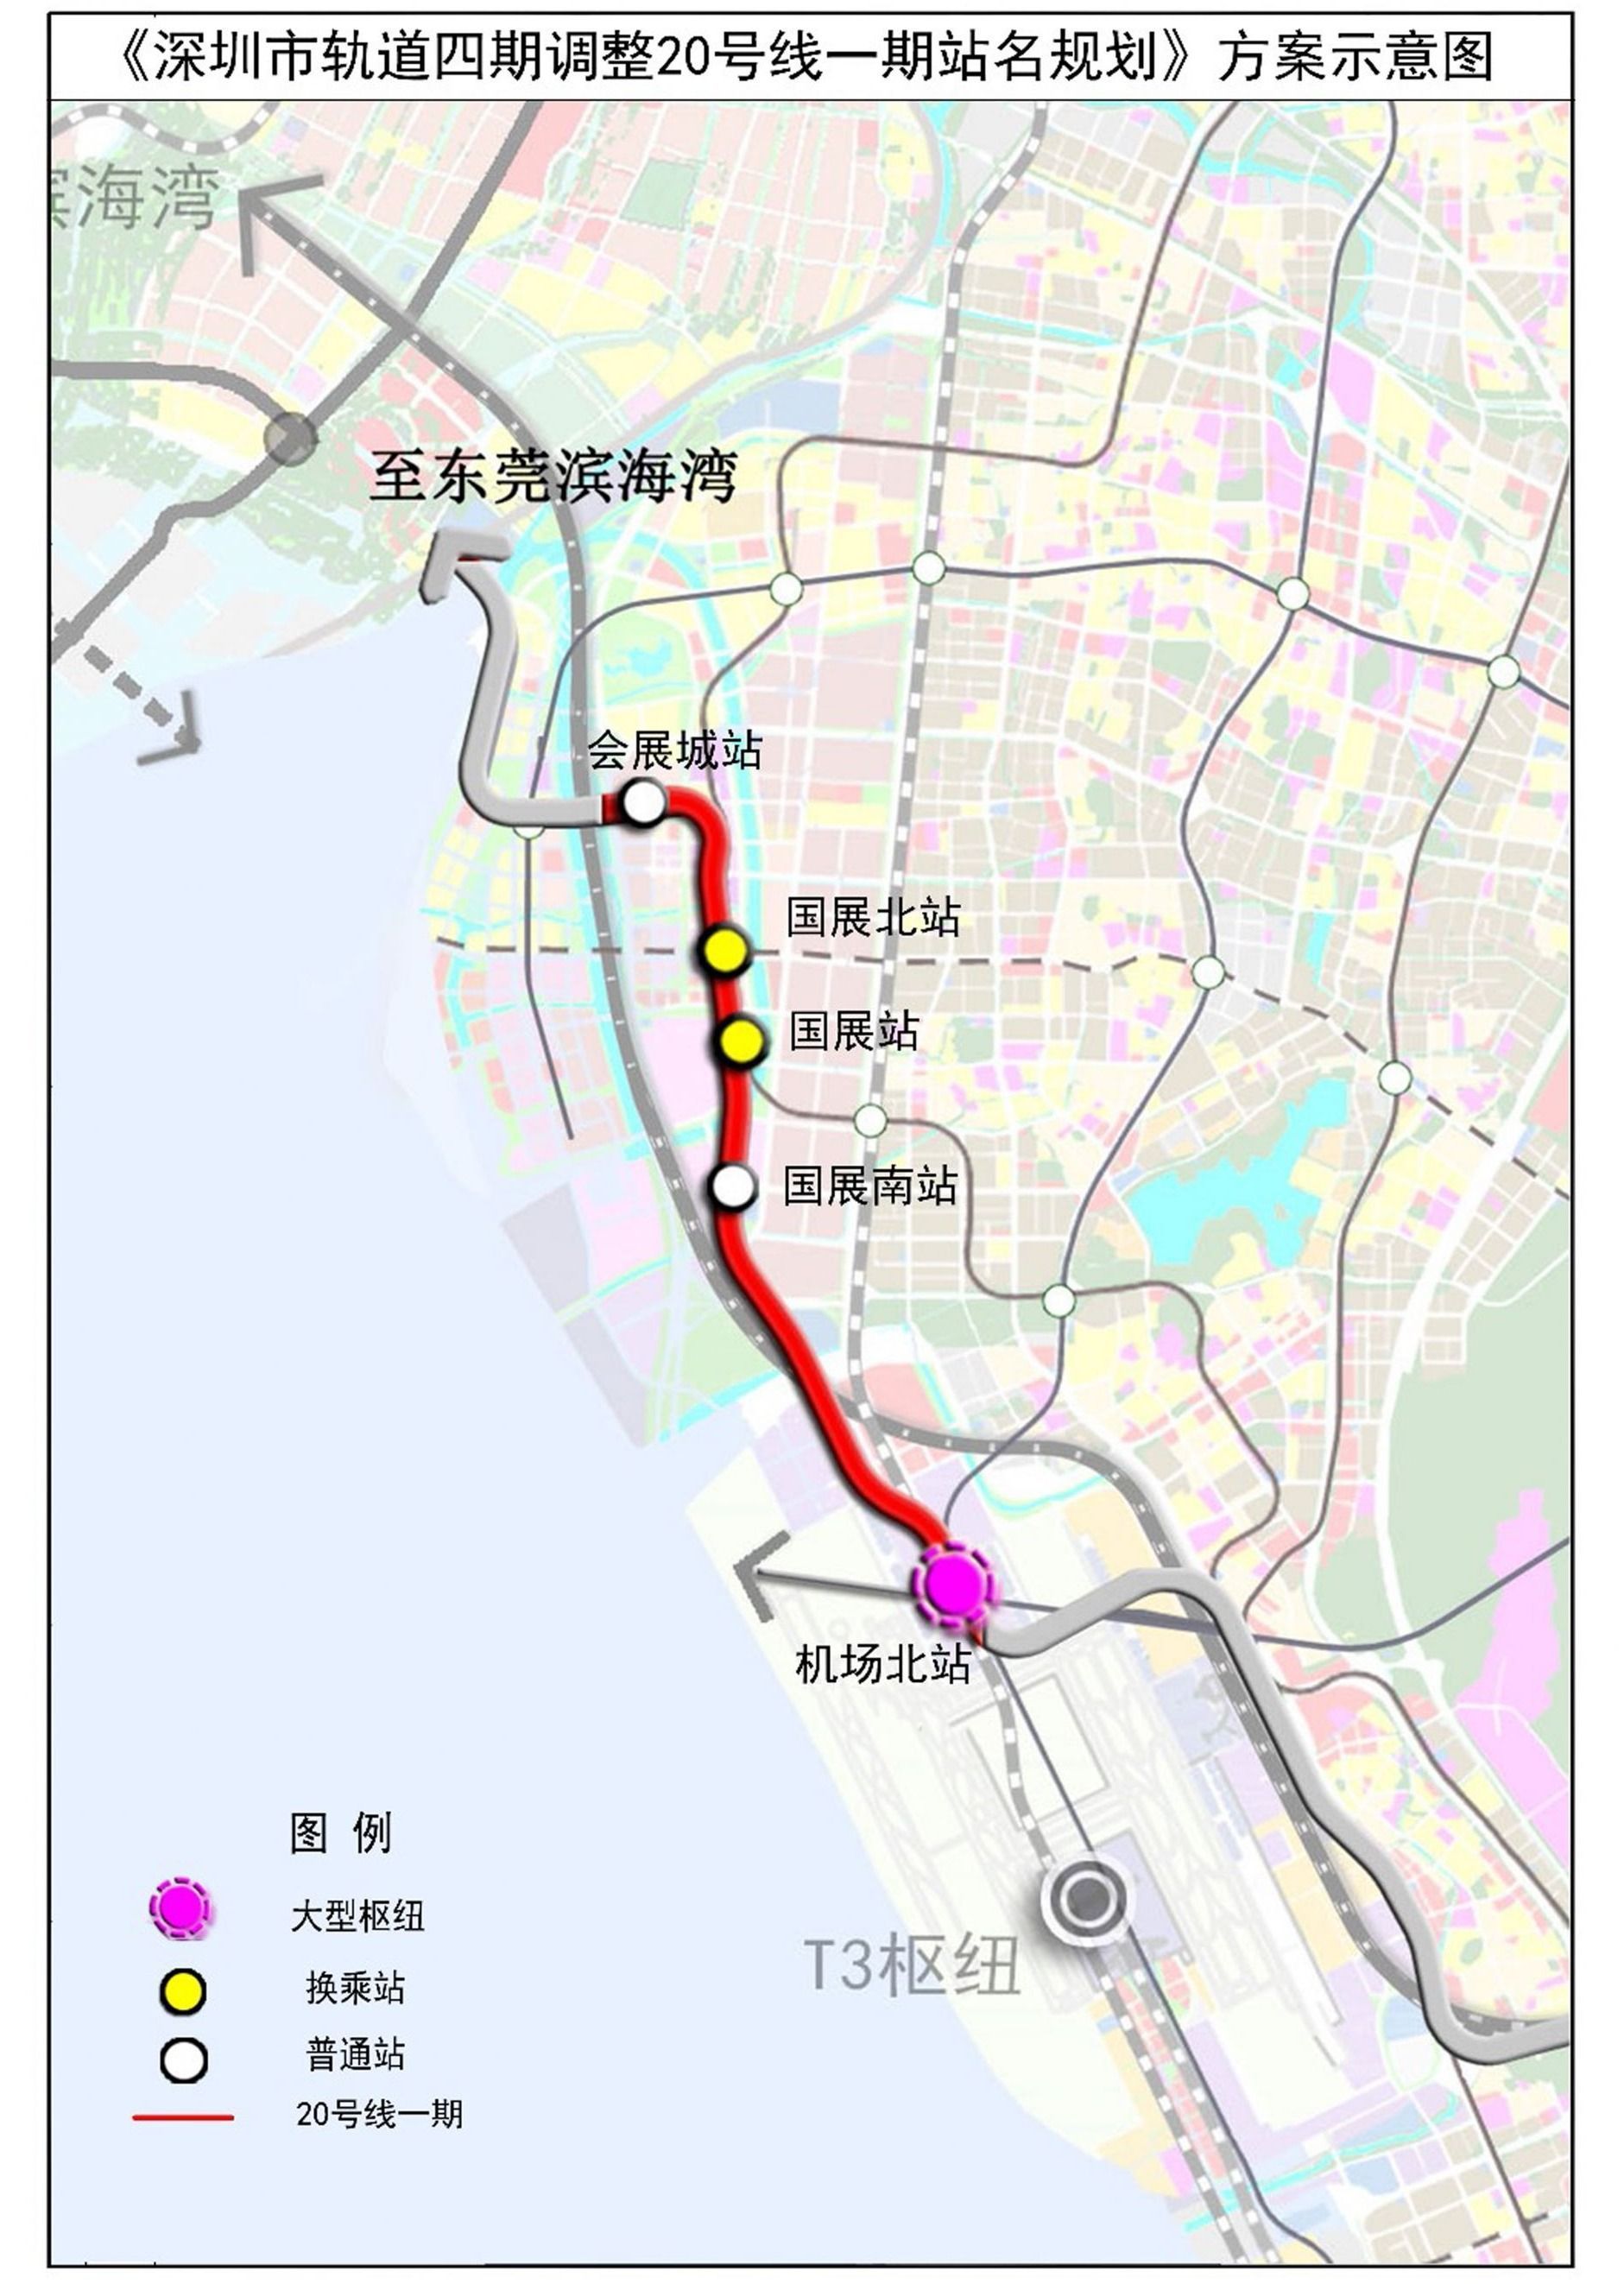 快速路上新地铁线上新港口上新今天深圳交通三喜临门